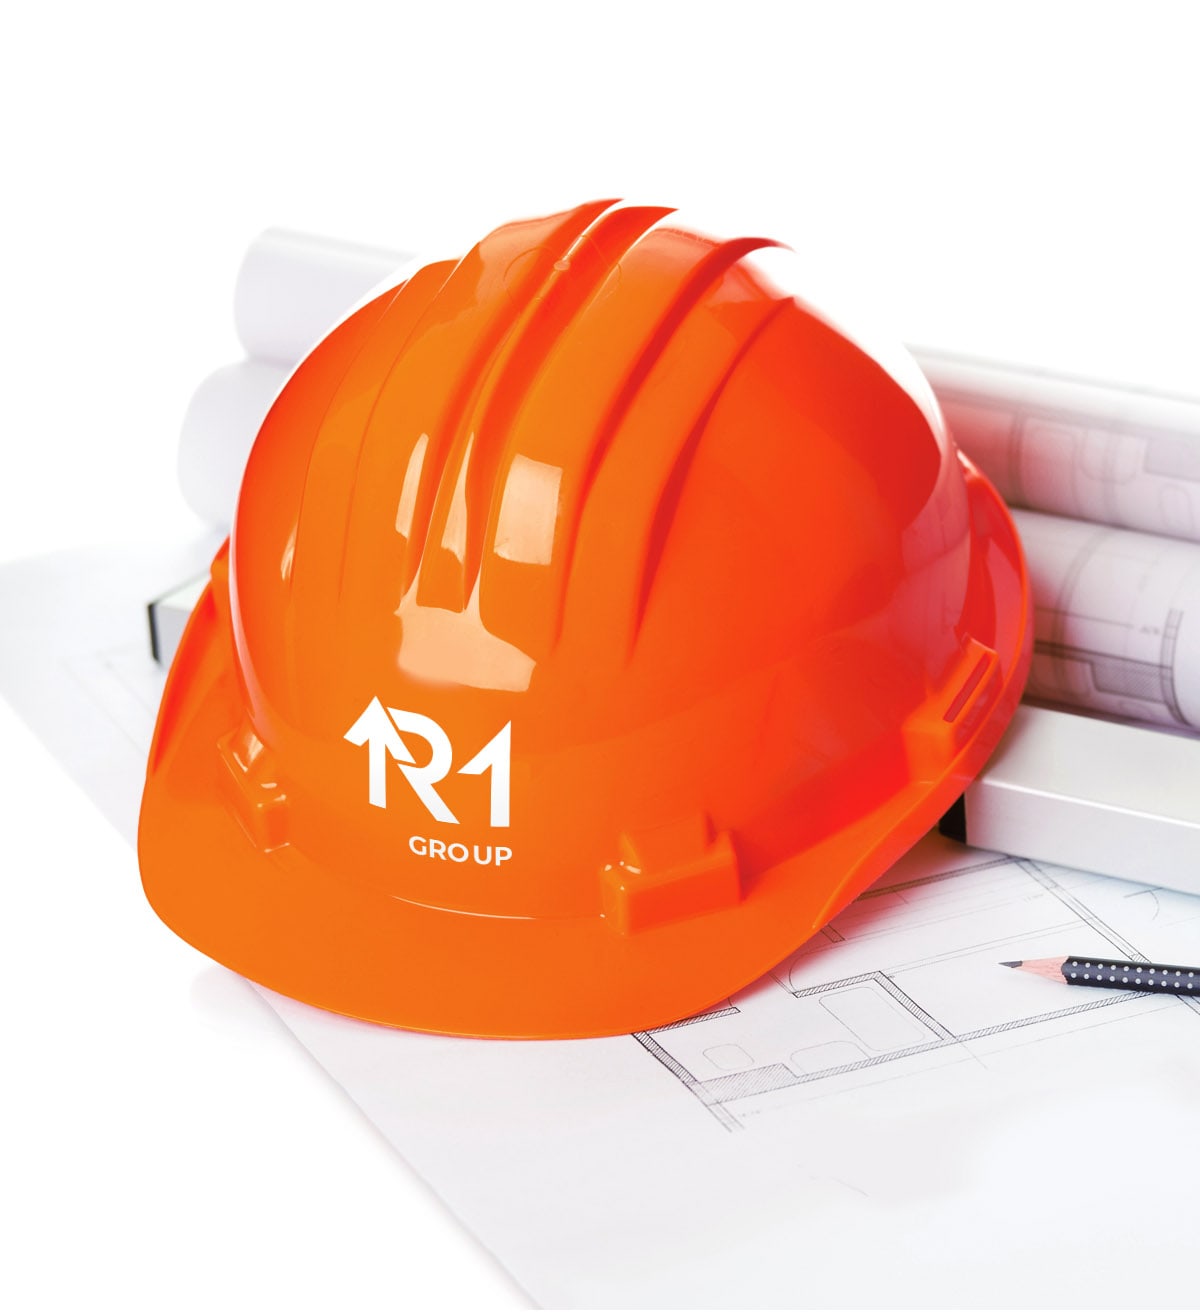 дизайн логотипа девелоперской компании R1